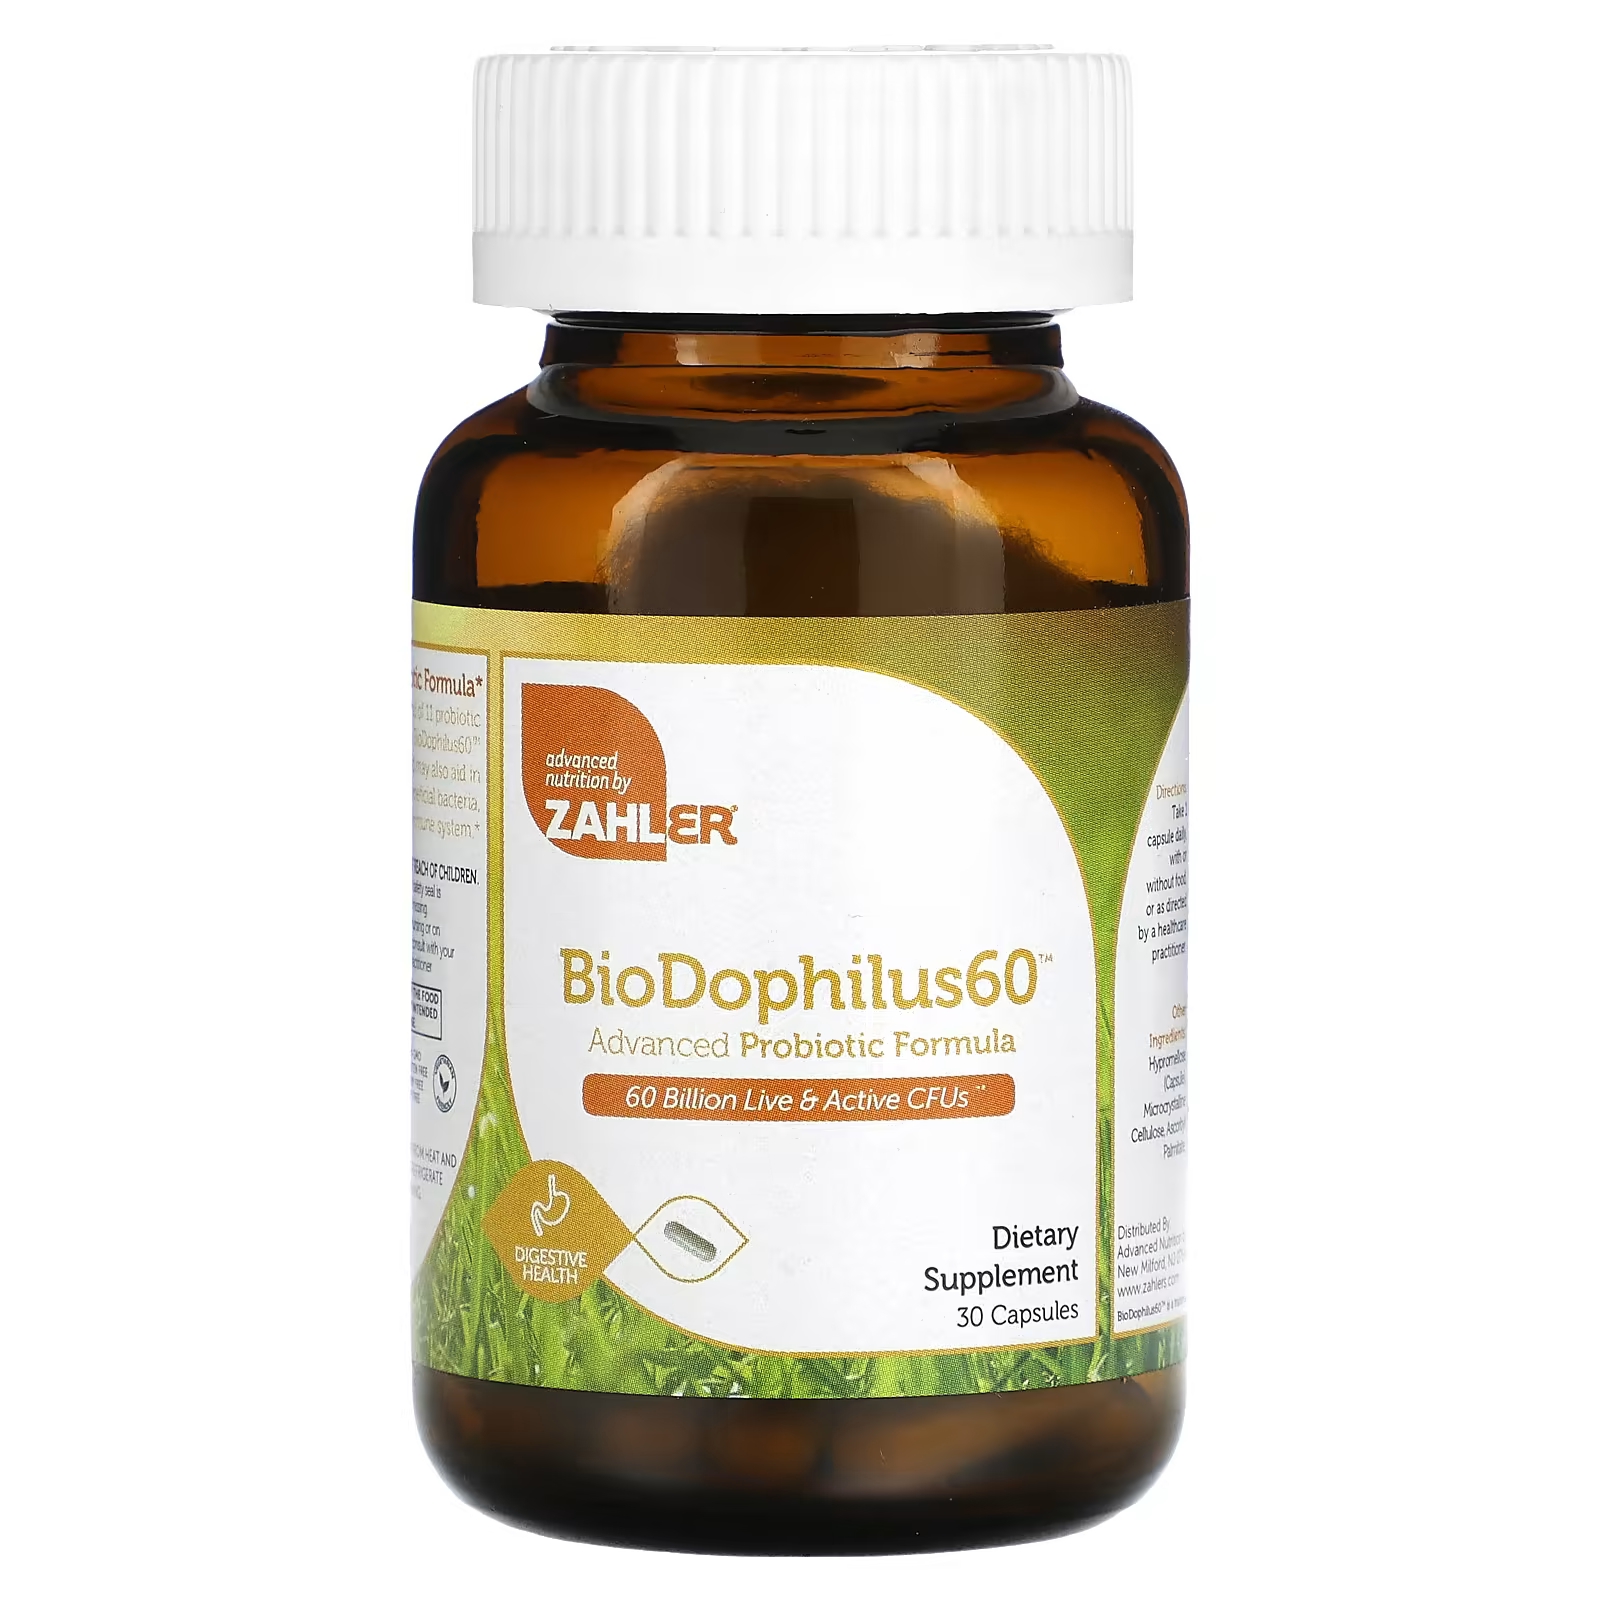 Пищевая добавка Zahler BioDophilus60 улучшенная пробиотическая формула 60 миллиардов КОЕ, 30 капсул